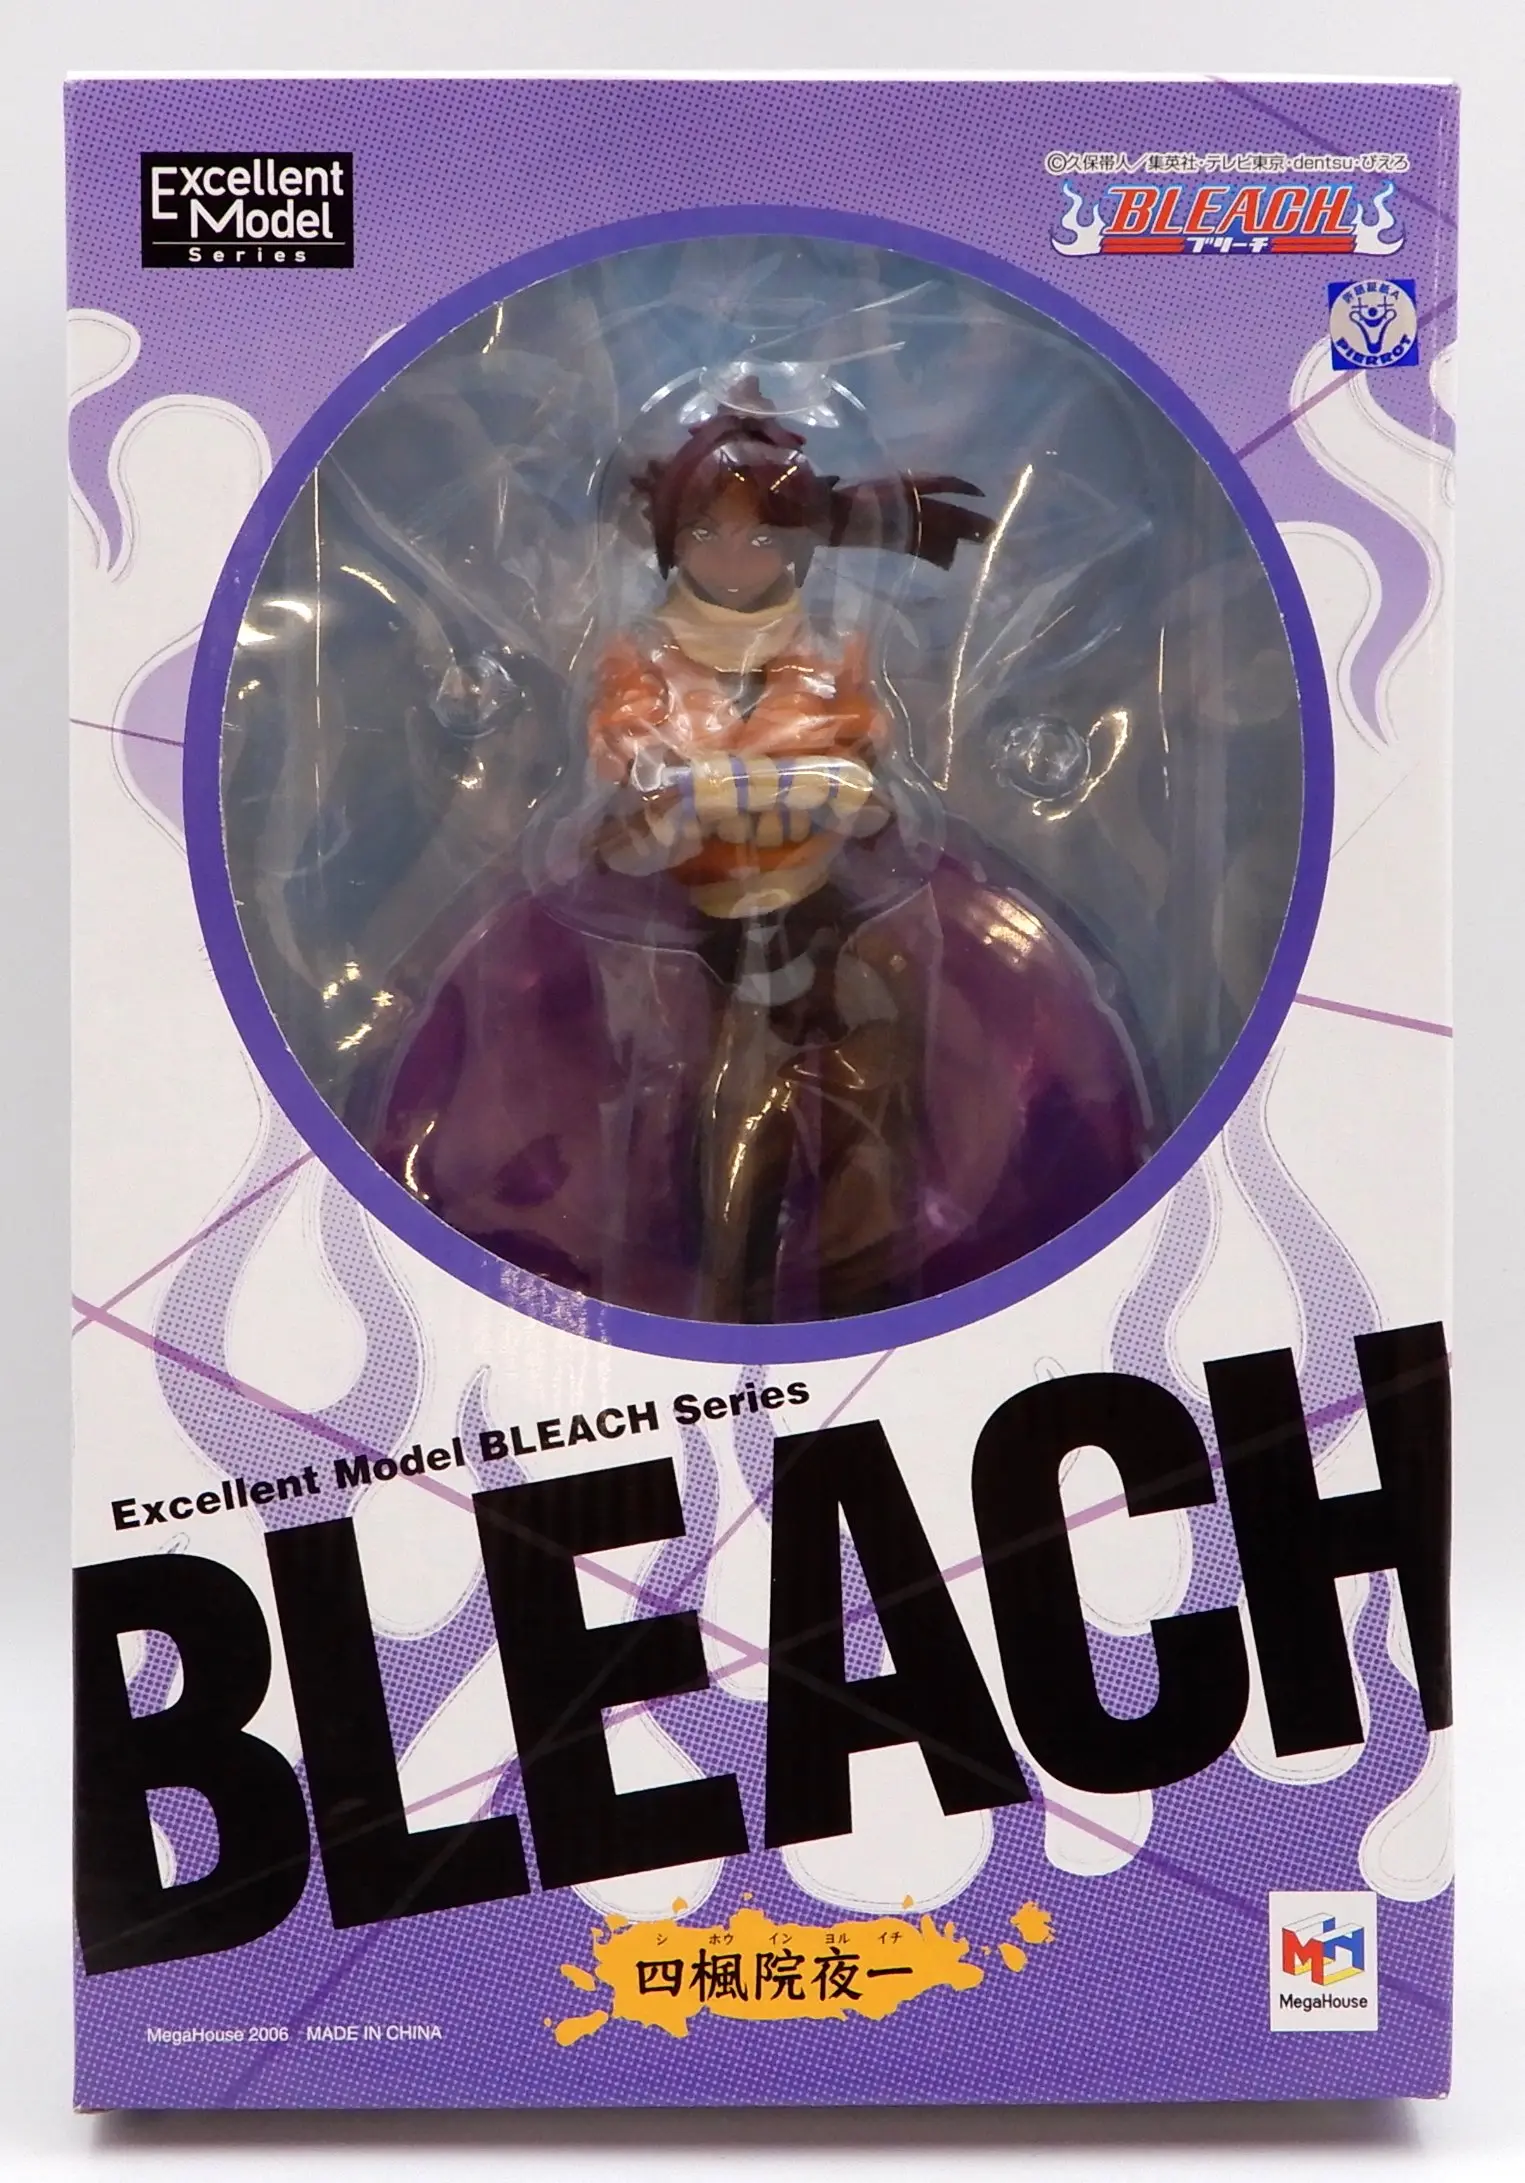 Figure - Bleach / Shihouin Yoruichi